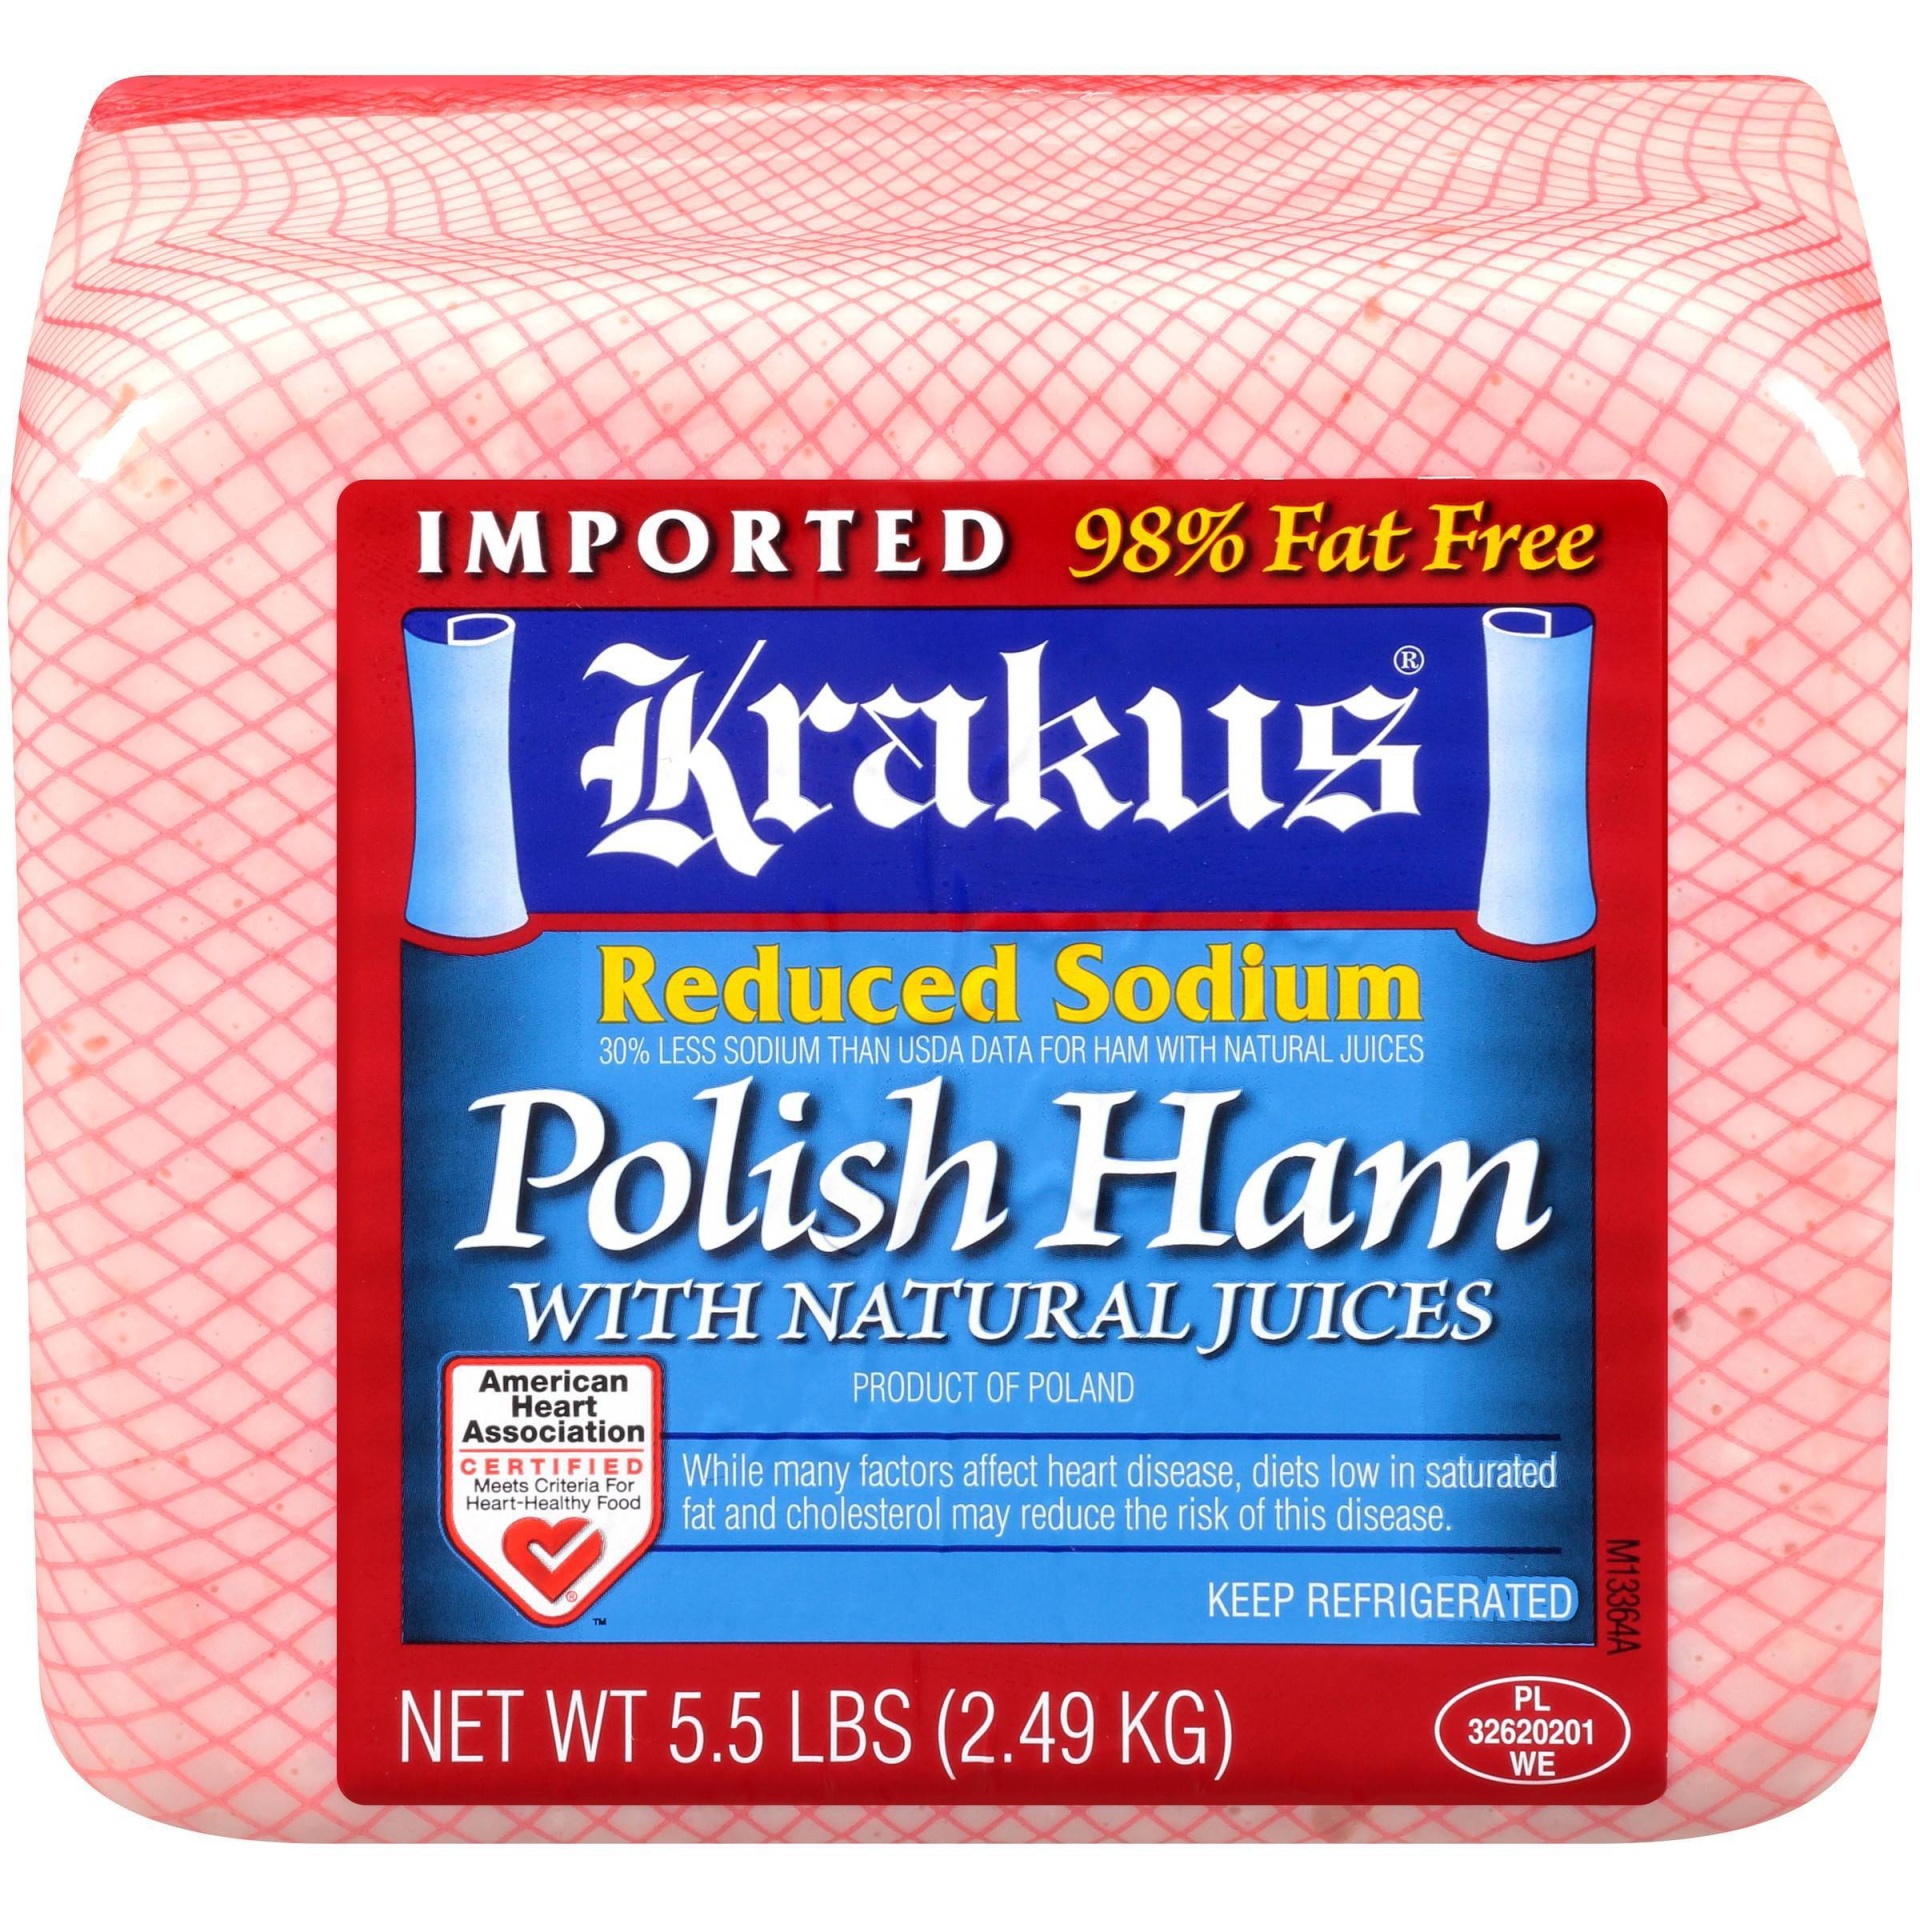 slide 1 of 3, Krakus Reduced Sodium Polished Ham with Natural Juices - Deli Fresh Sliced, per lb